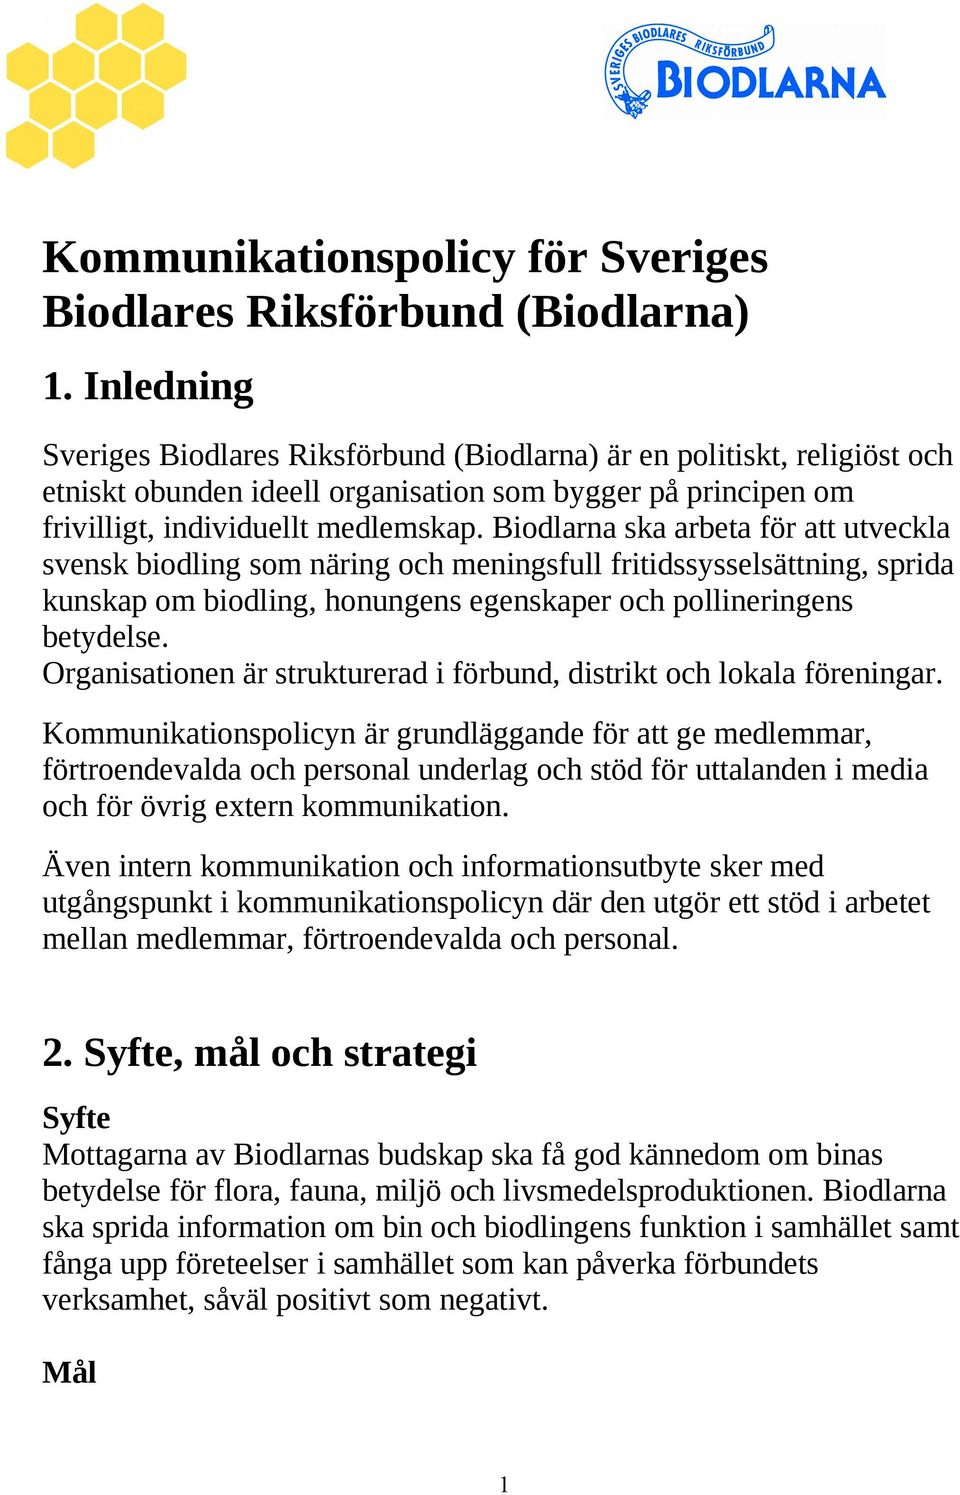 Biodlarna ska arbeta för att utveckla svensk biodling som näring och meningsfull fritidssysselsättning, sprida kunskap om biodling, honungens egenskaper och pollineringens betydelse.